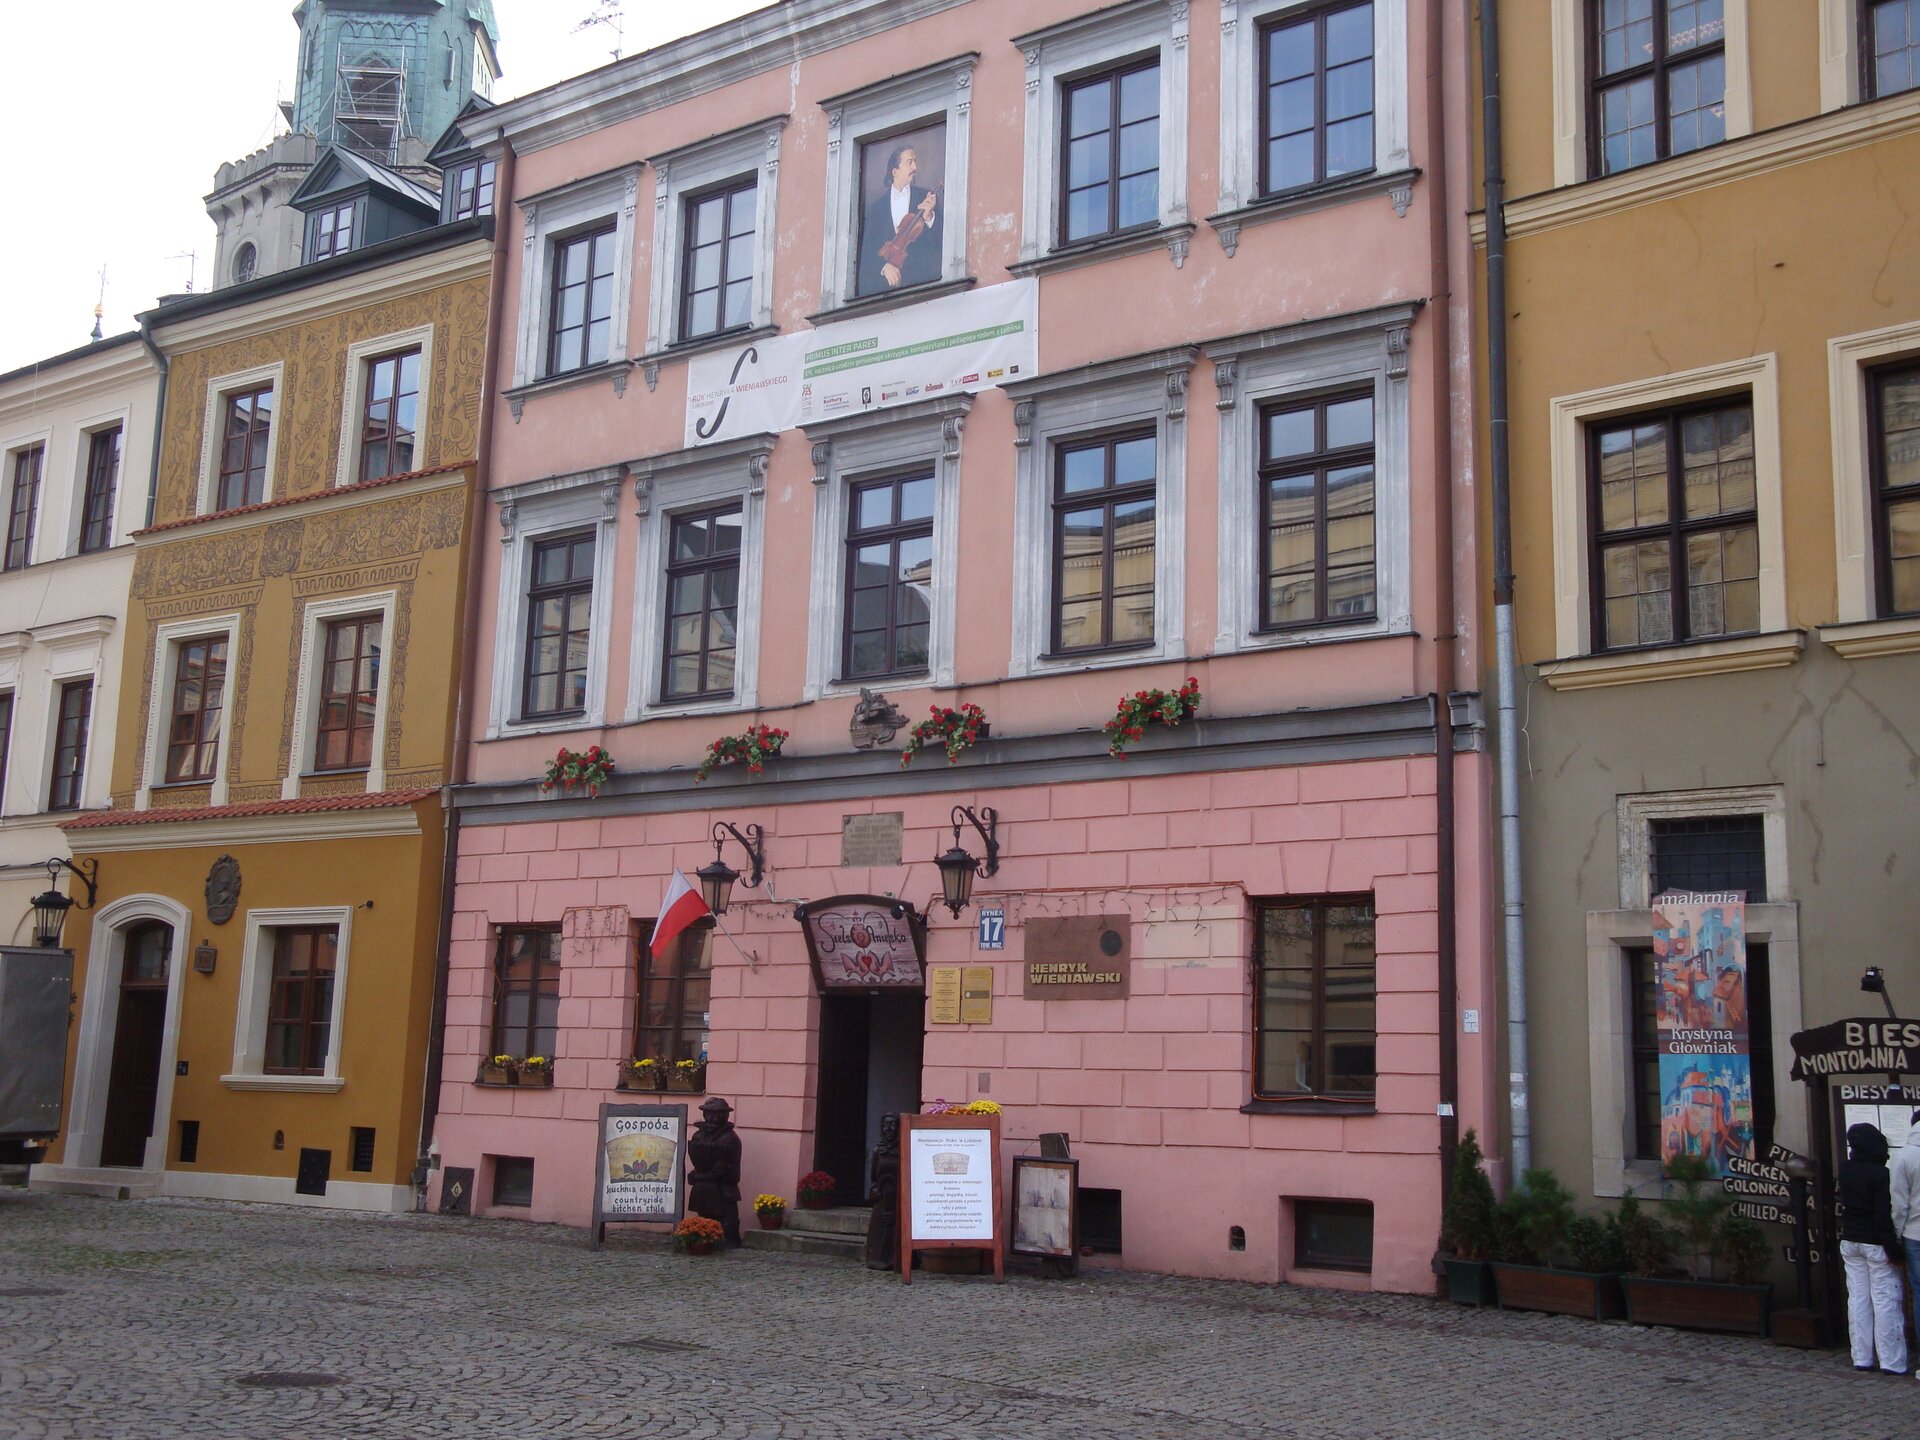 Ilustracja przedstawia domy na lubelskiej starówce. W centrum znajduje się dom, w którym urodził się Henryk Wieniawski. Fasada tej kamienicy jest pomalowana na różowo. Budynek ma dwa piętra. Na pierwszym piętrze 5 okien, na drugim piętrze zamiast środkowego okna umieszczono portret kompozytora.